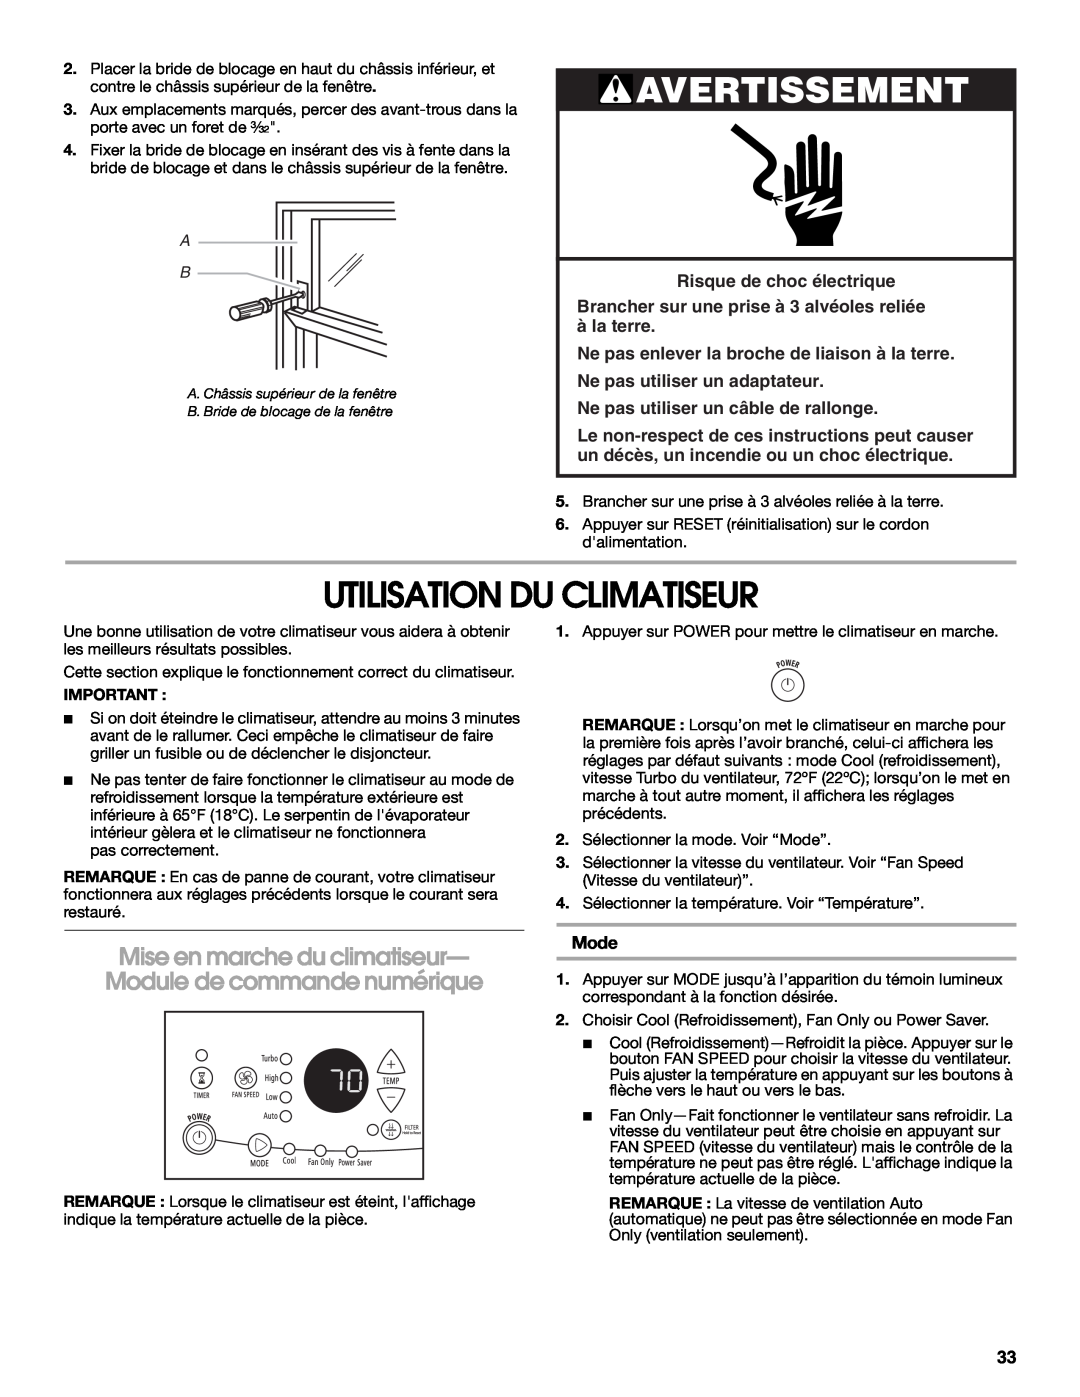 Whirlpool ACM052PS0 manual Utilisation Du Climatiseur, Avertissement, Risque de choc électrique, àla terre, Mode 